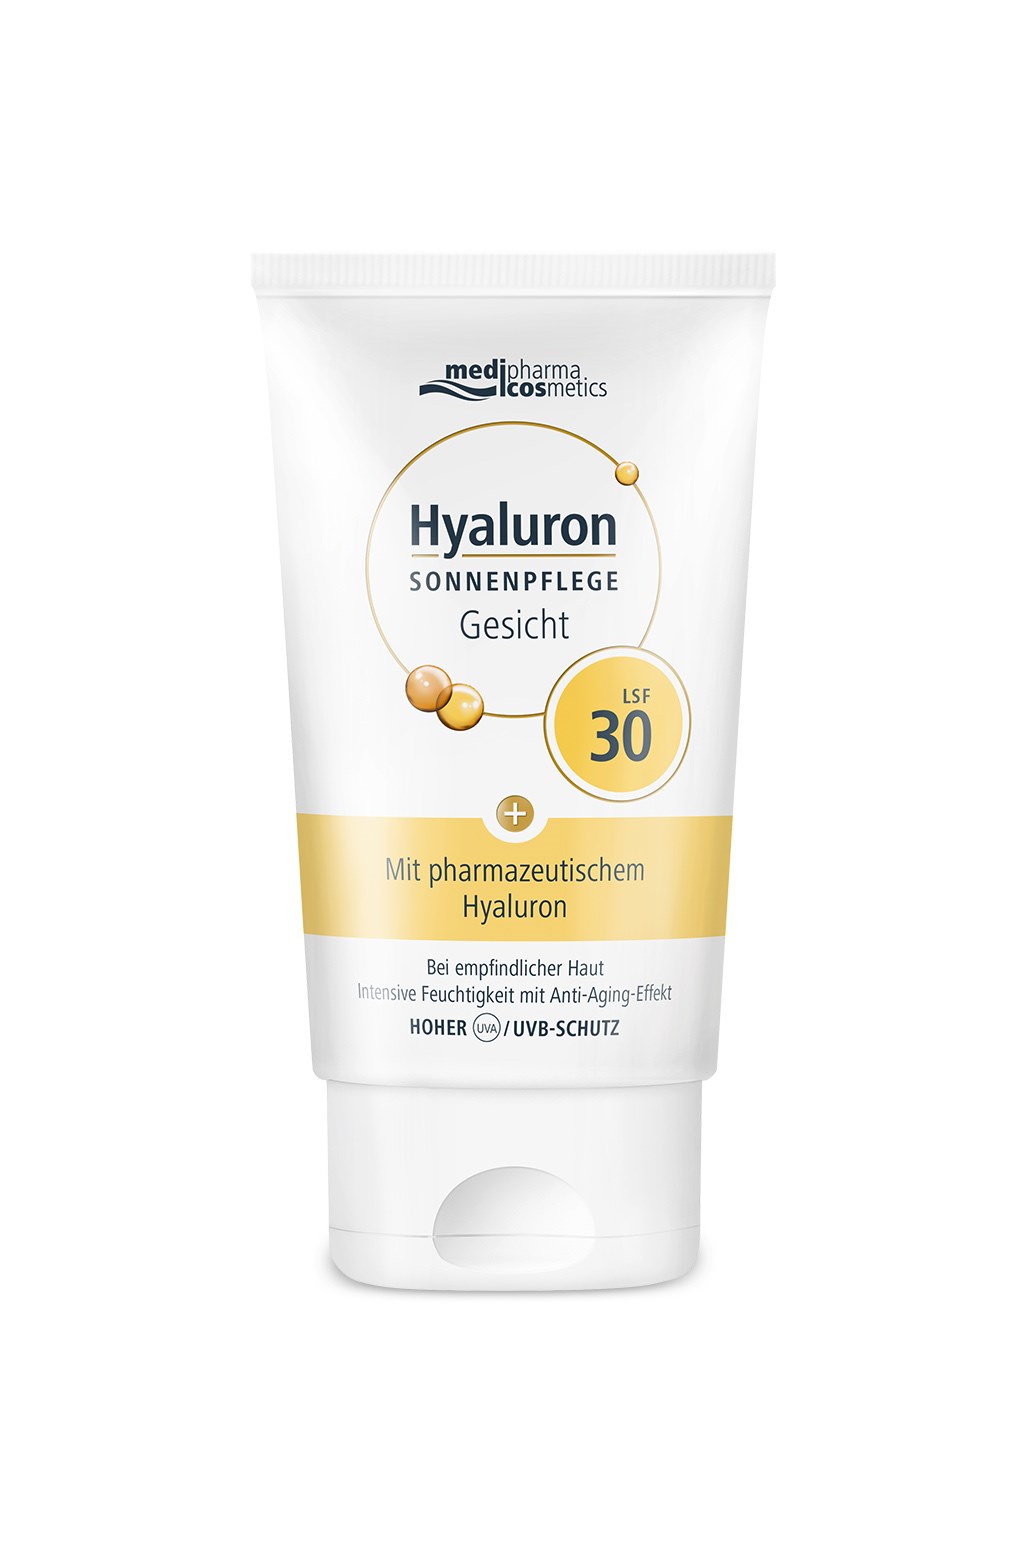 medipharma cosmetics - Hyaluron SONNENPFLEGE Gesicht LSF 30